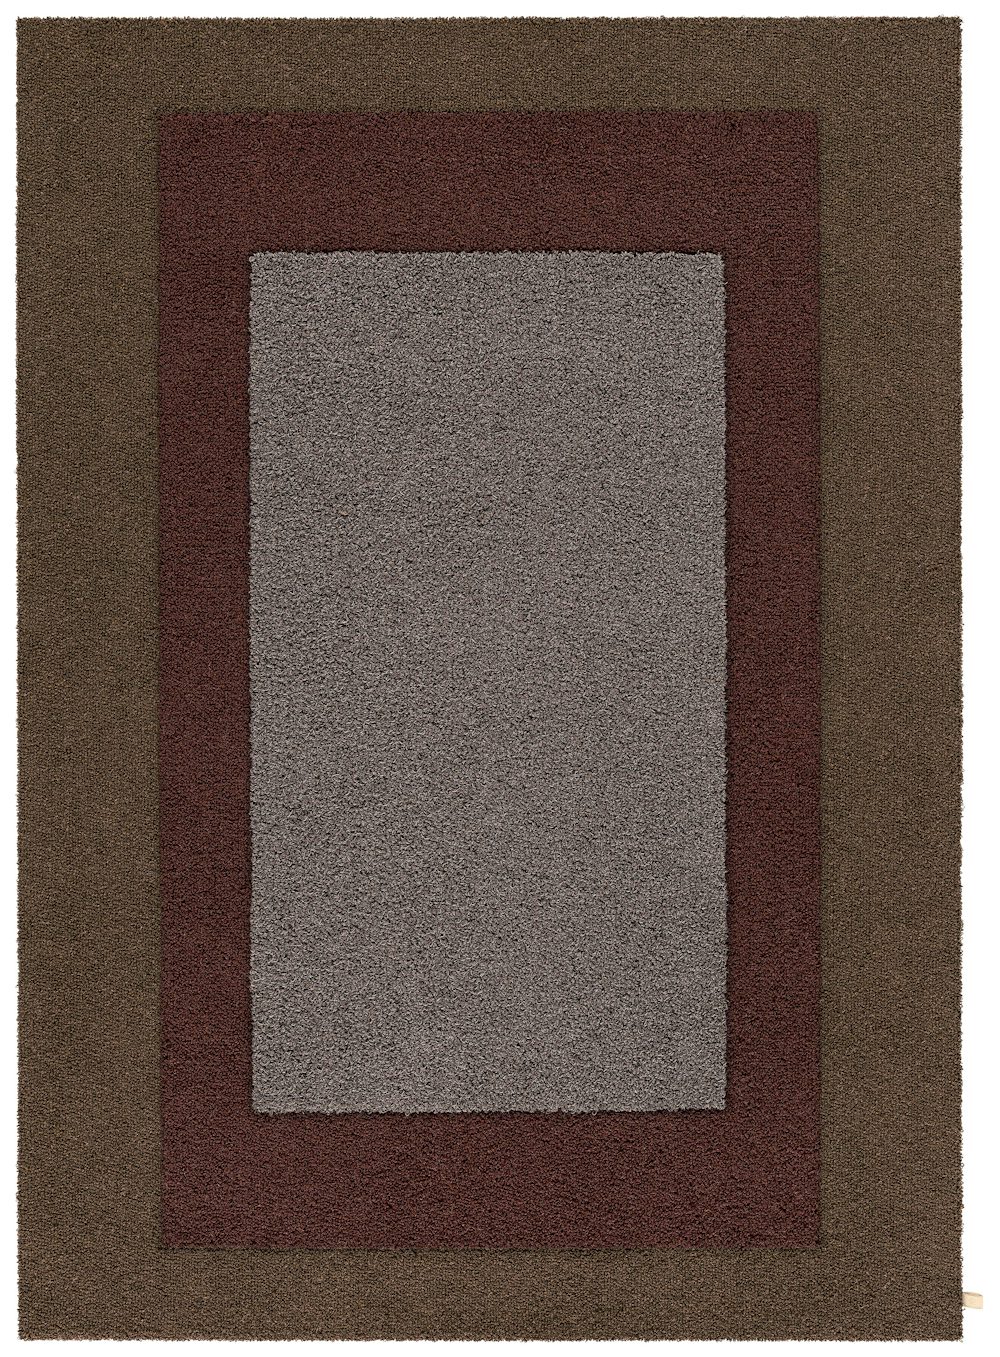 Kasthall Tegel Center Carpet 1